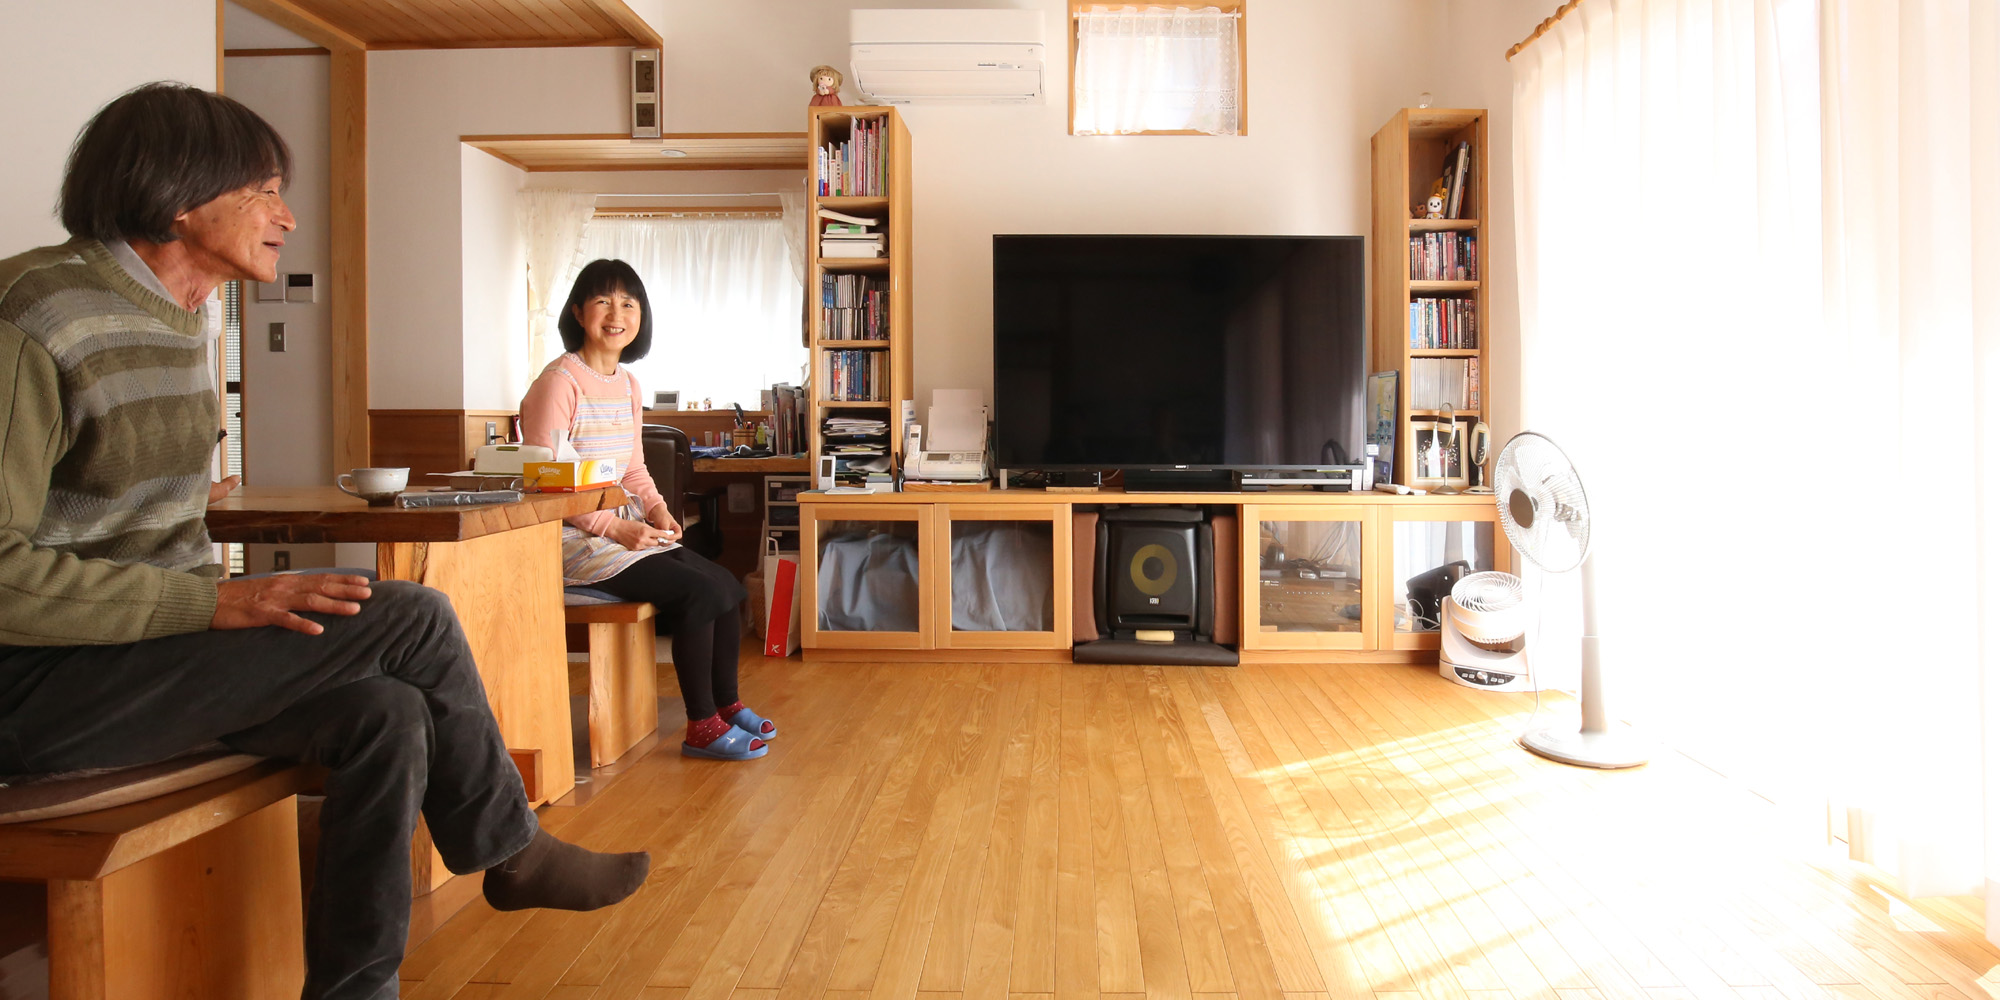 1329-神奈川県鎌倉市山崎-木造注文住宅-健康になる家-ご夫婦リビングにて-2000-1000